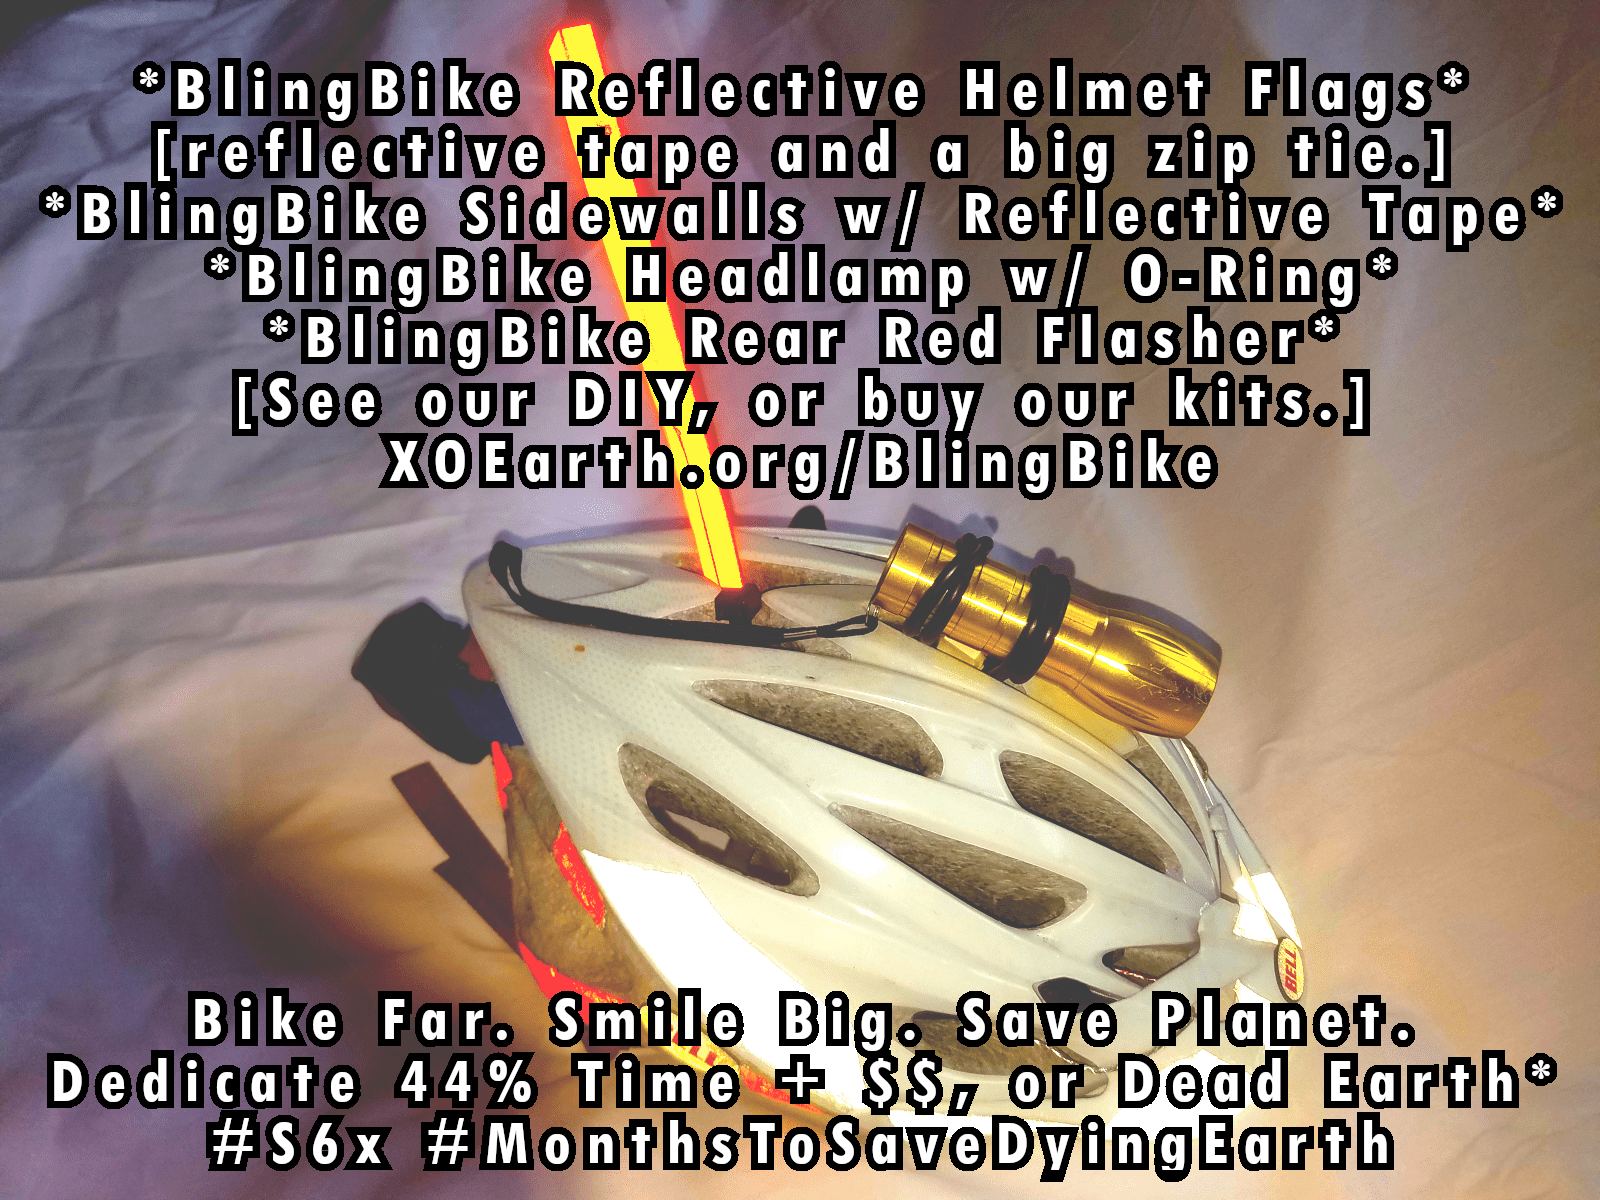 BlingBIKE :: Reflective Helmet and Bike :: Flag and Sticker Kits